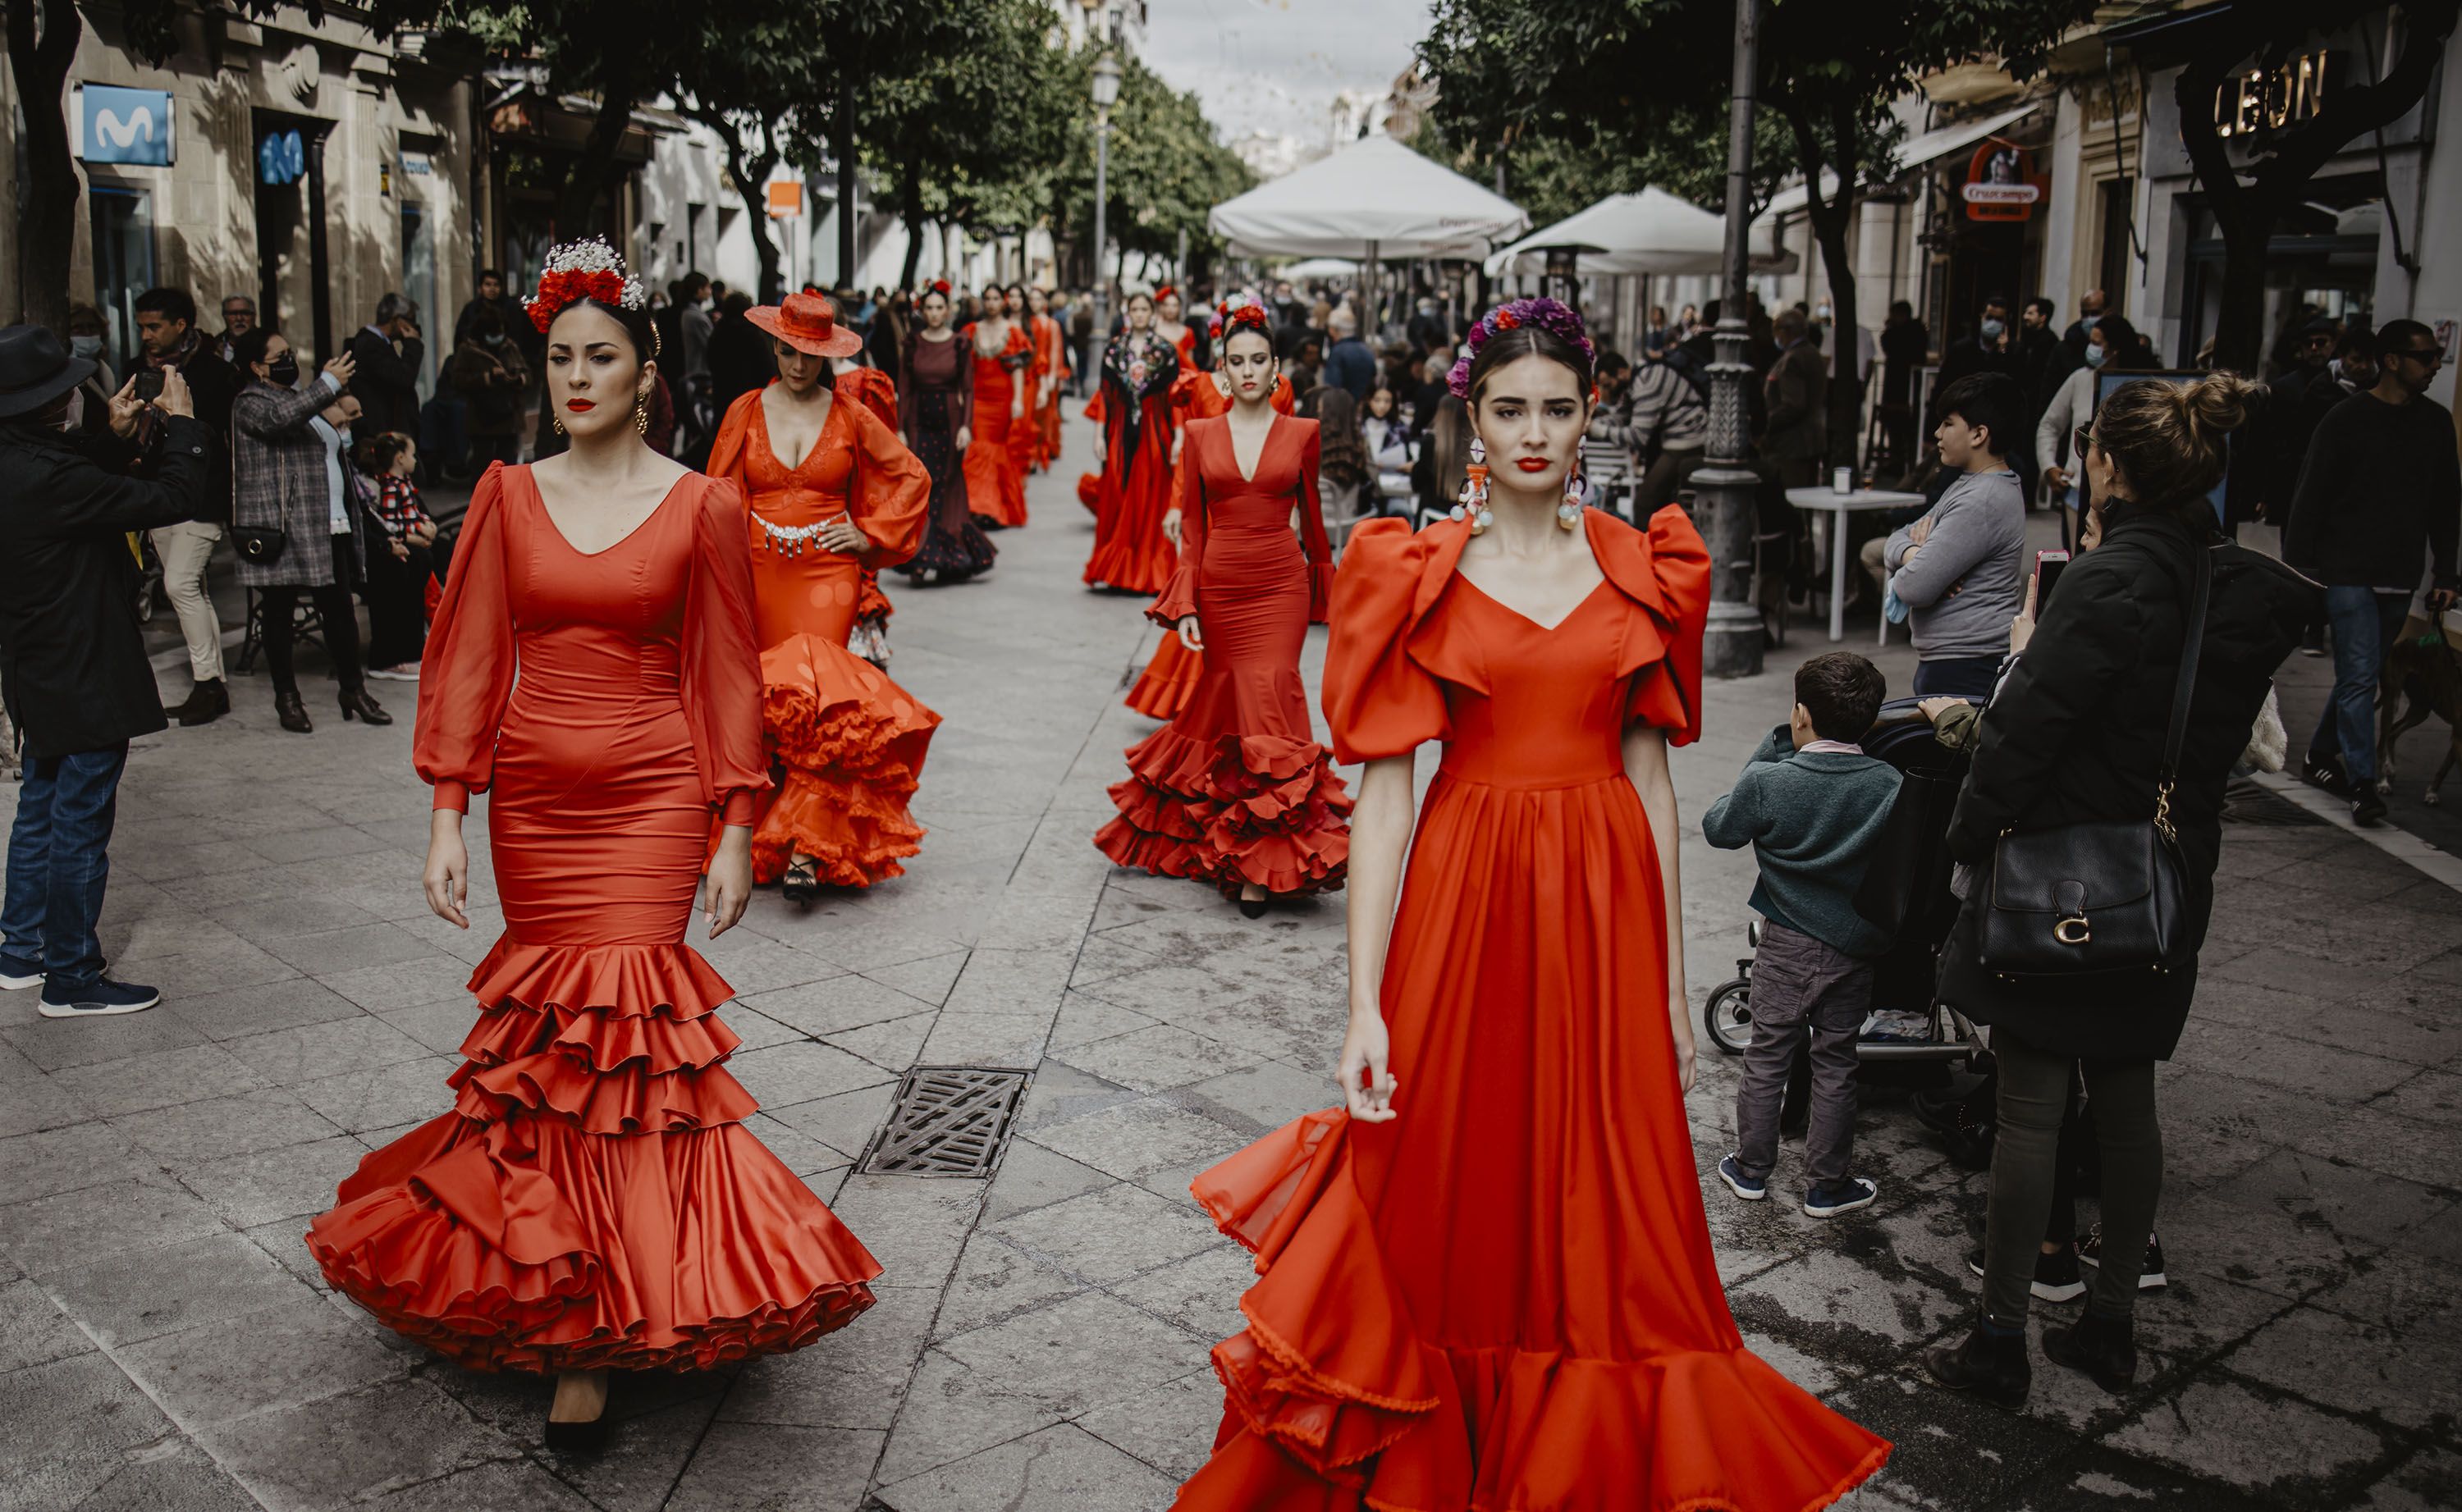 Pasarela a pie de calle para inaugurar un 'showroom' de moda flamenca.